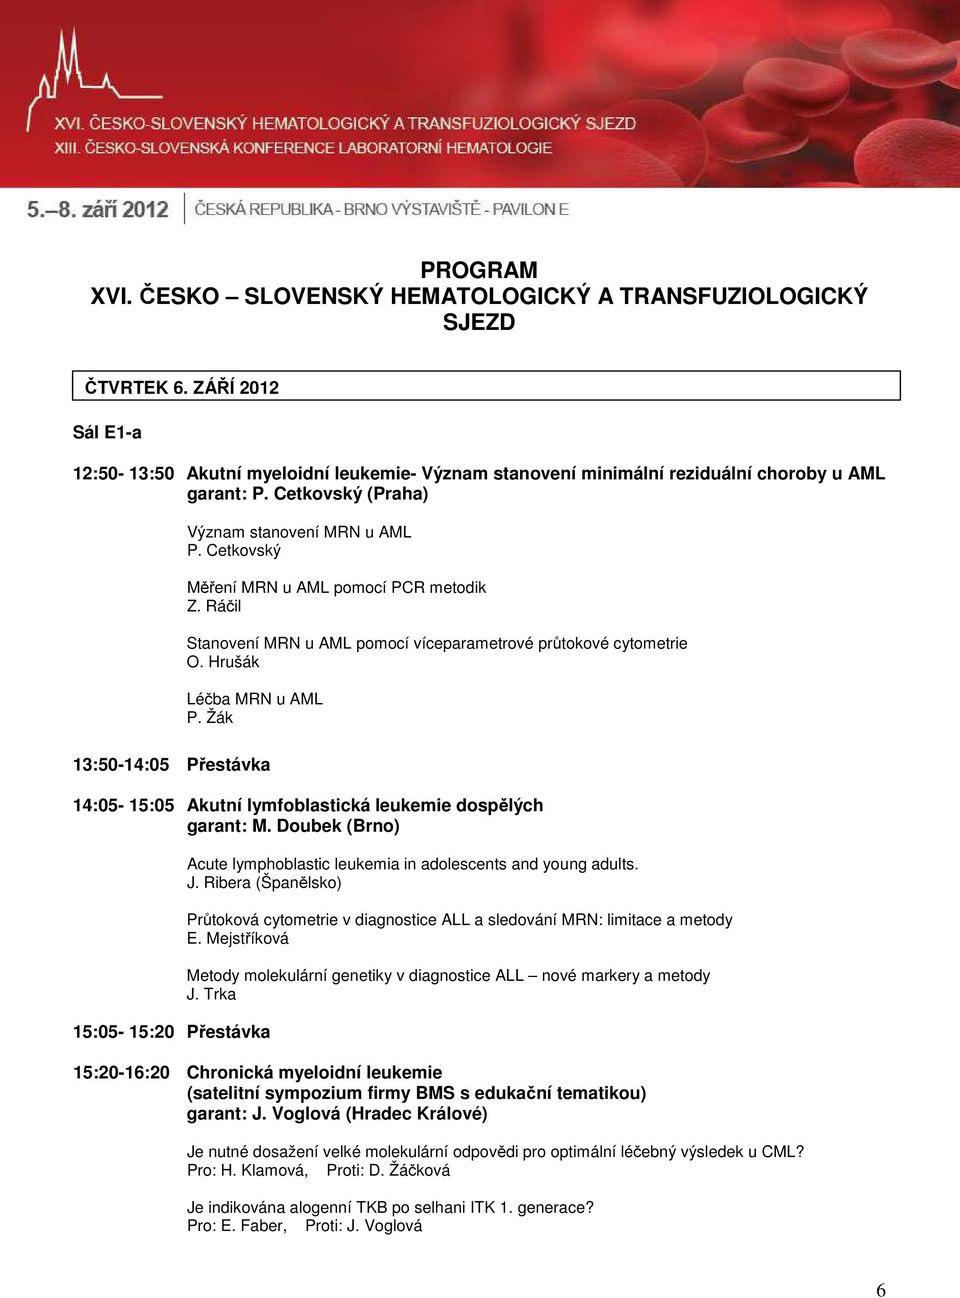 Žák 13:50-14:05 Přestávka 14:05-15:05 Akutní lymfoblastická leukemie dospělých garant: M. Doubek (Brno) 15:05-15:20 Přestávka Acute lymphoblastic leukemia in adolescents and young adults. J.